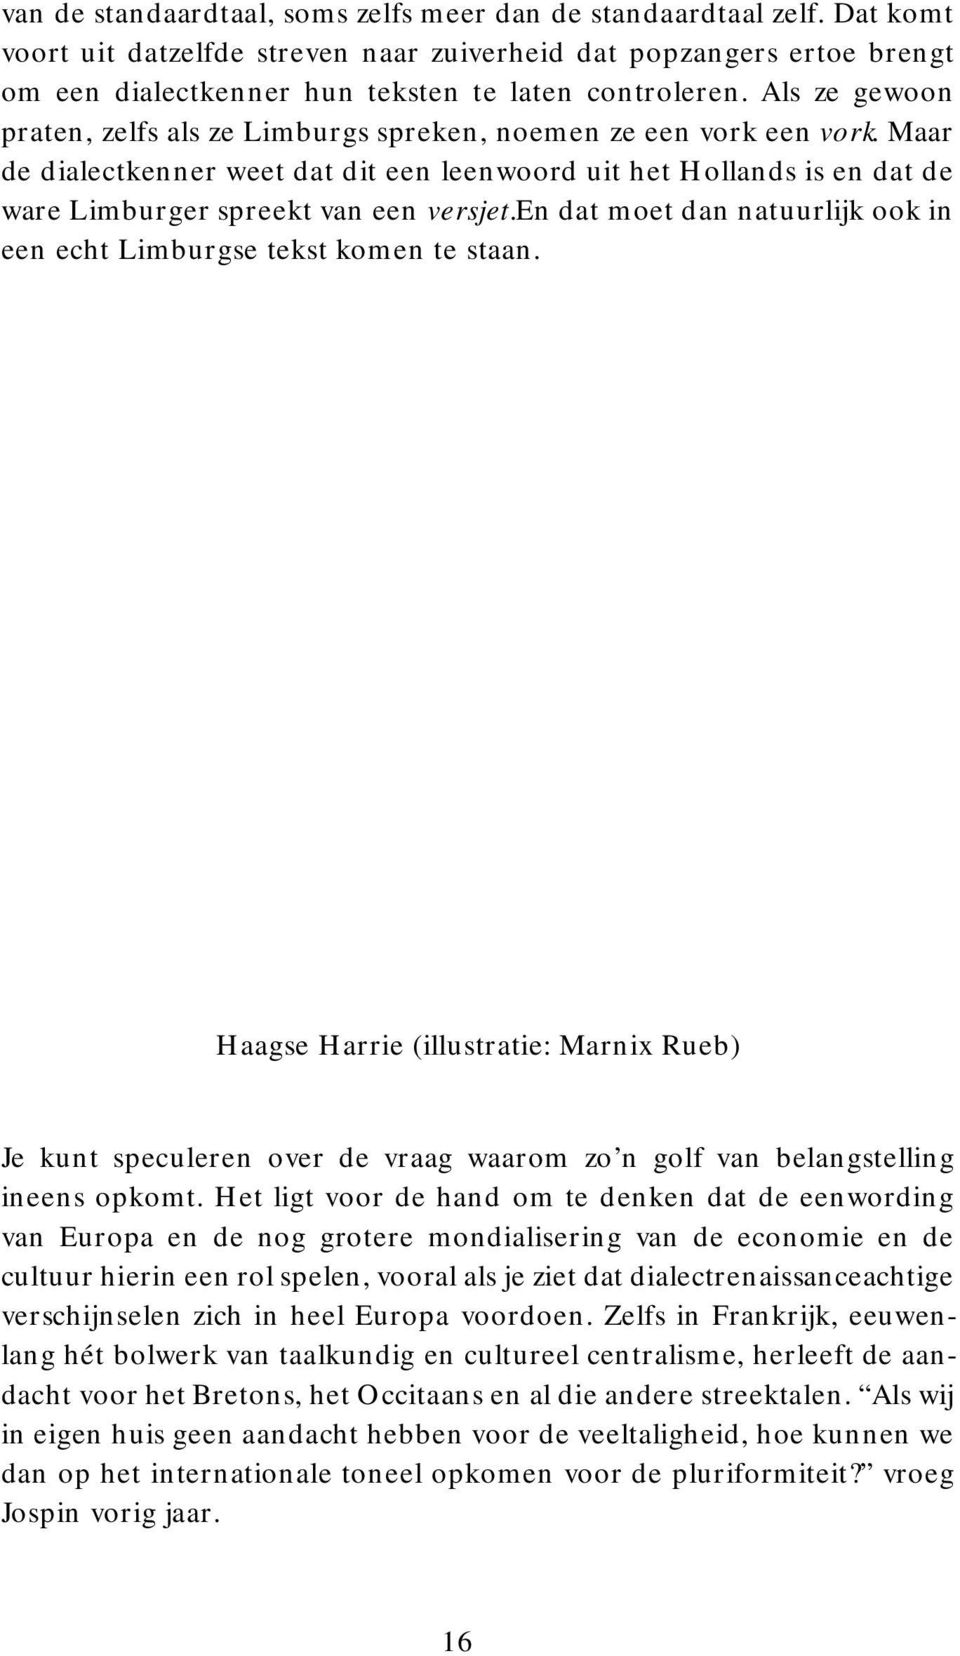 en dat moet dan natuurlijk ook in een echt Limburgse tekst komen te staan. Haagse Harrie (illustratie: Marnix Rueb) Je kunt speculeren over de vraag waarom zo n golf van belangstelling ineens opkomt.